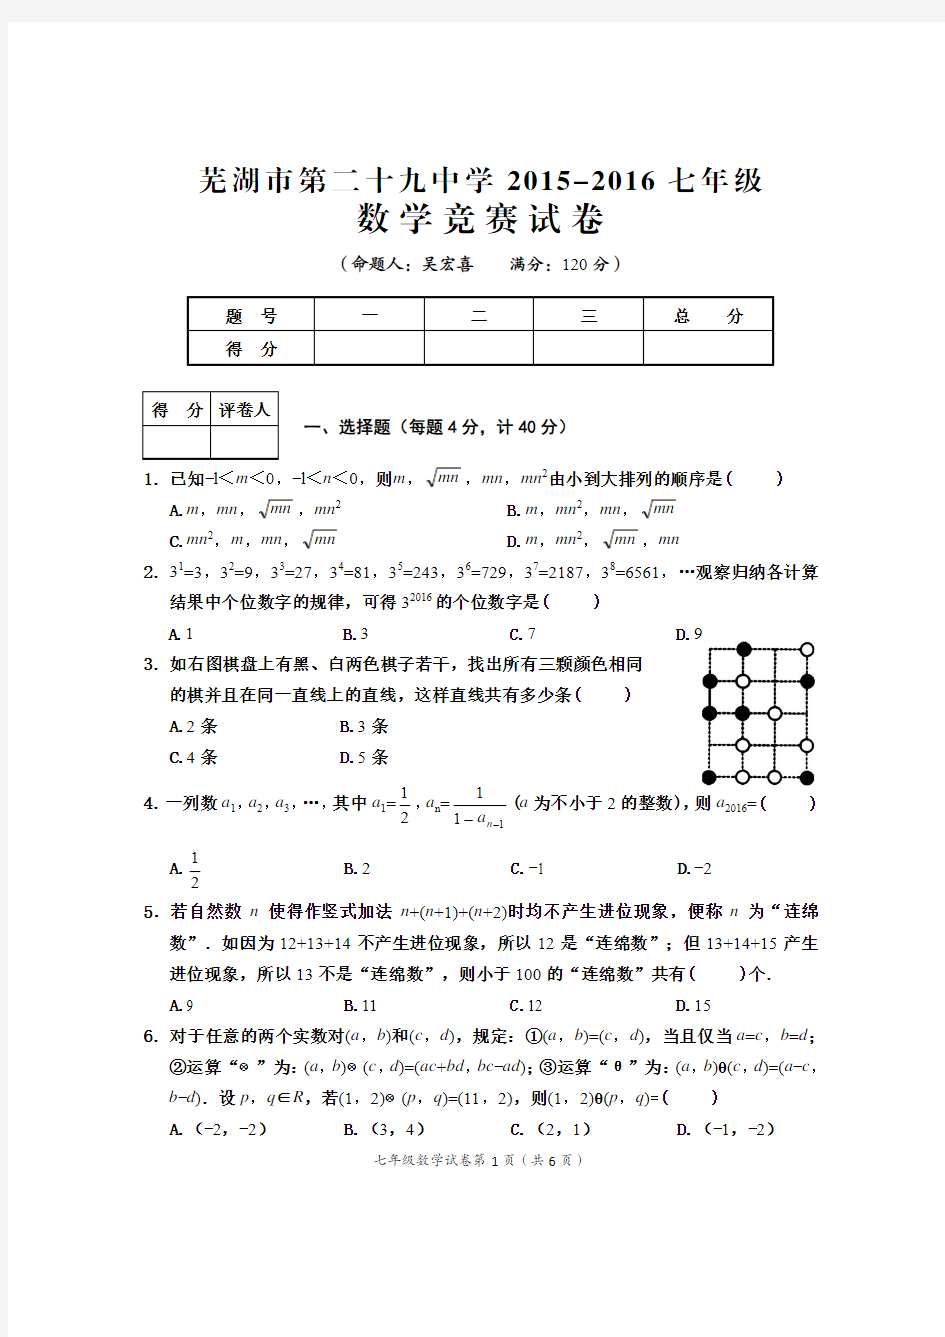 芜湖市 中七年级数学竞赛试题